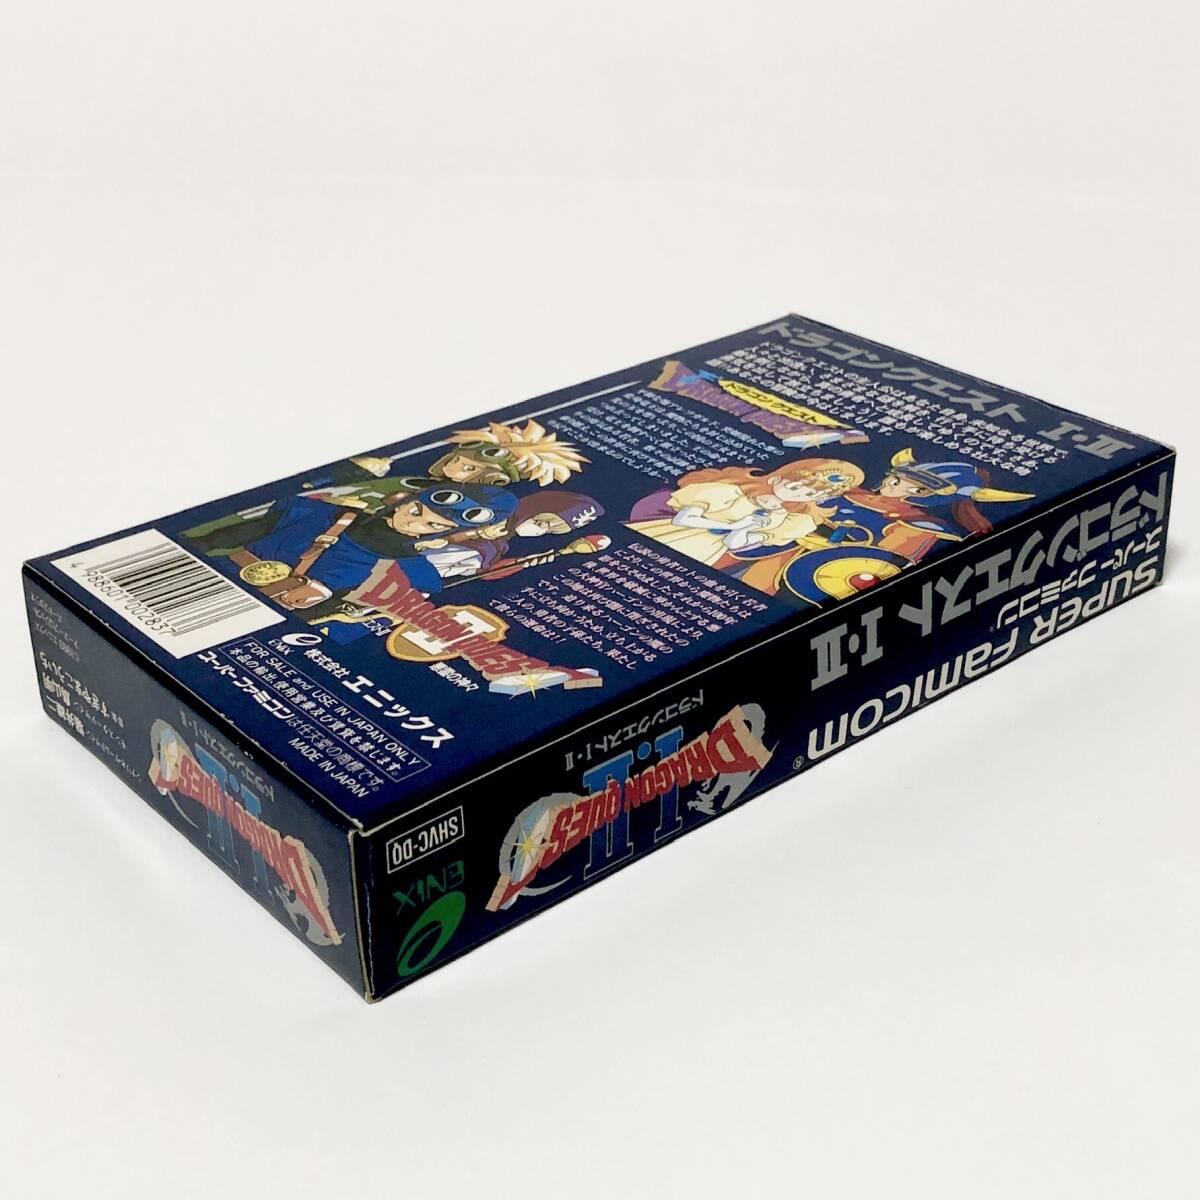 スーパーファミコン ドラゴンクエストⅠ・Ⅱ 箱説付き エニックス ドラクエ Nintendo Super Famicom Dragon Quest Ⅰ&Ⅱ CIB Tested Enix_画像6